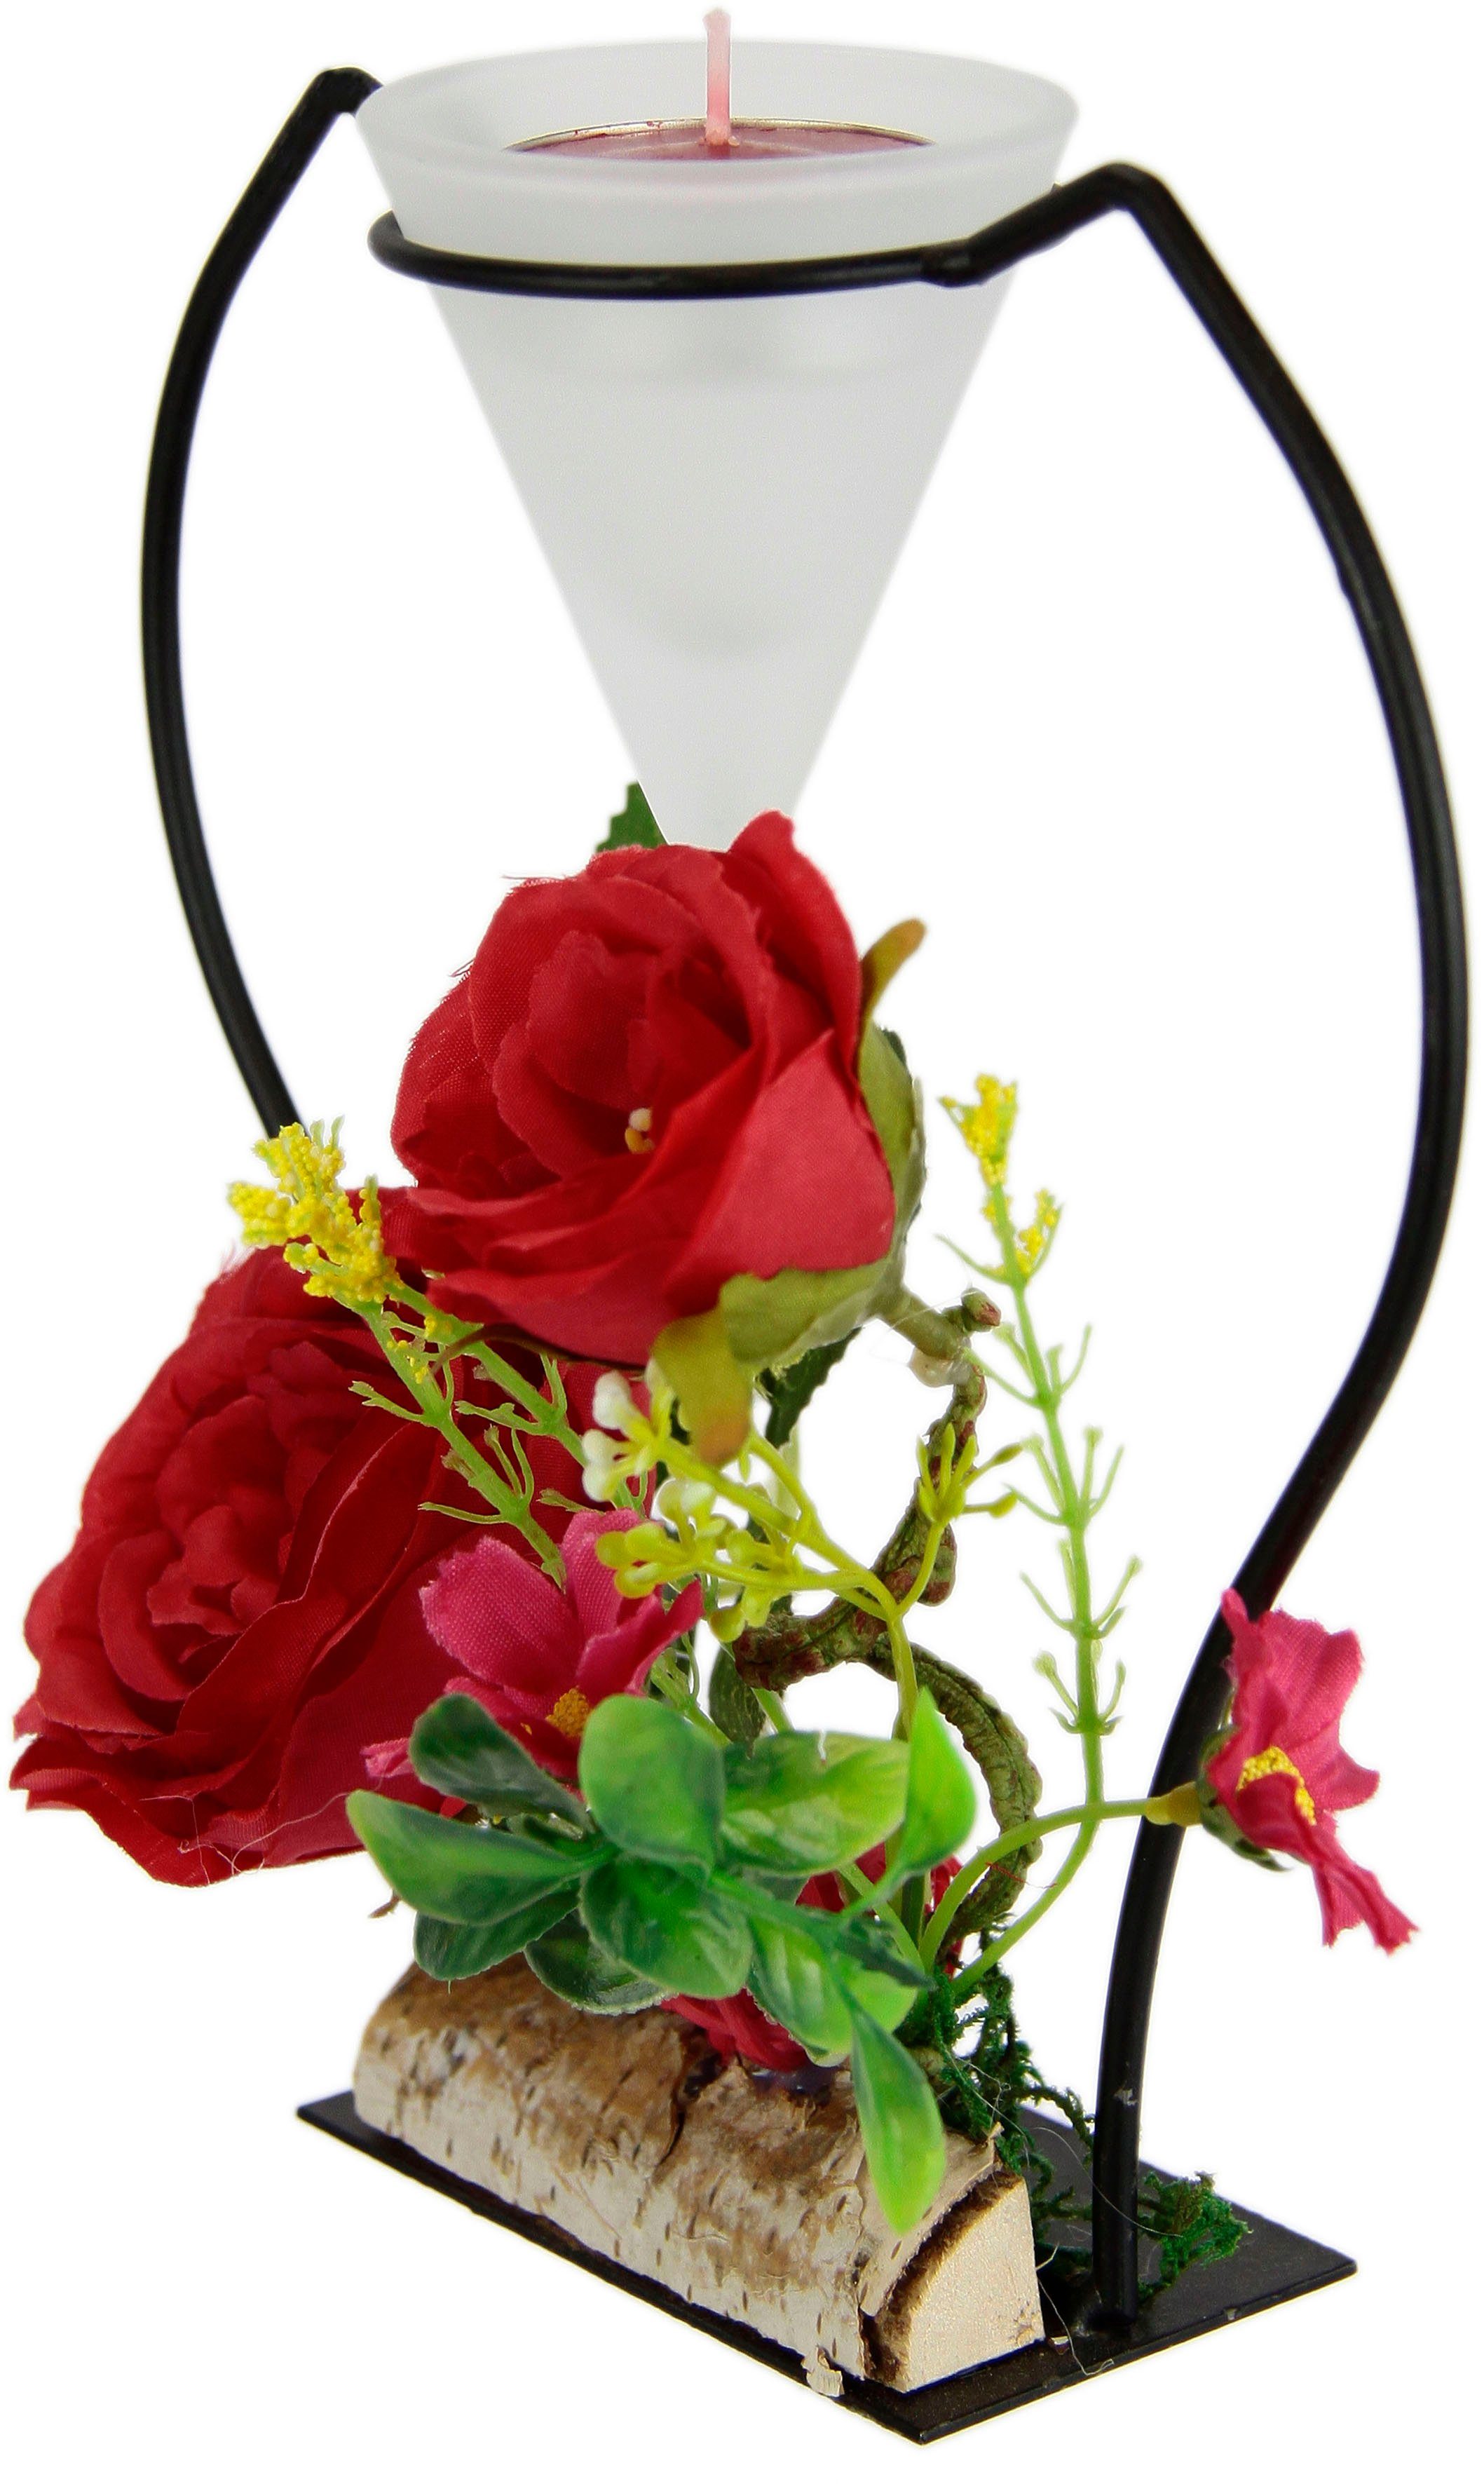 I.GE.A. Teelichthalter Rose, Metall Glaseinsatz Teelichtkerze Advent 3D Kerzenständer rot Kunstblumen